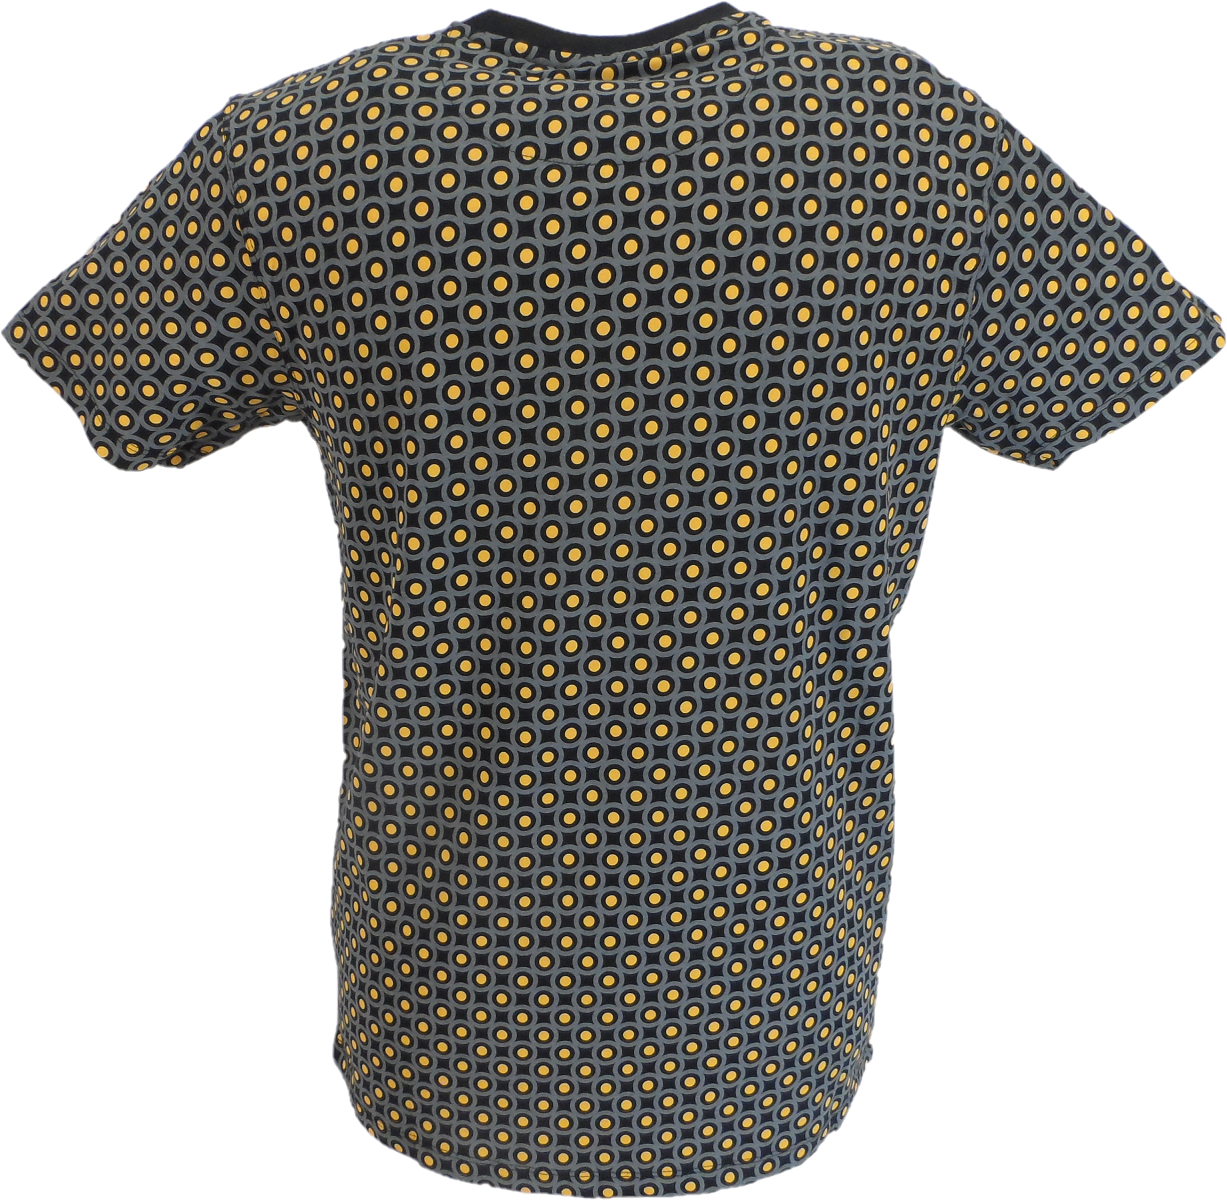 Schwarzes Herren-T-Shirt mit Allover-Target-Print Lambretta